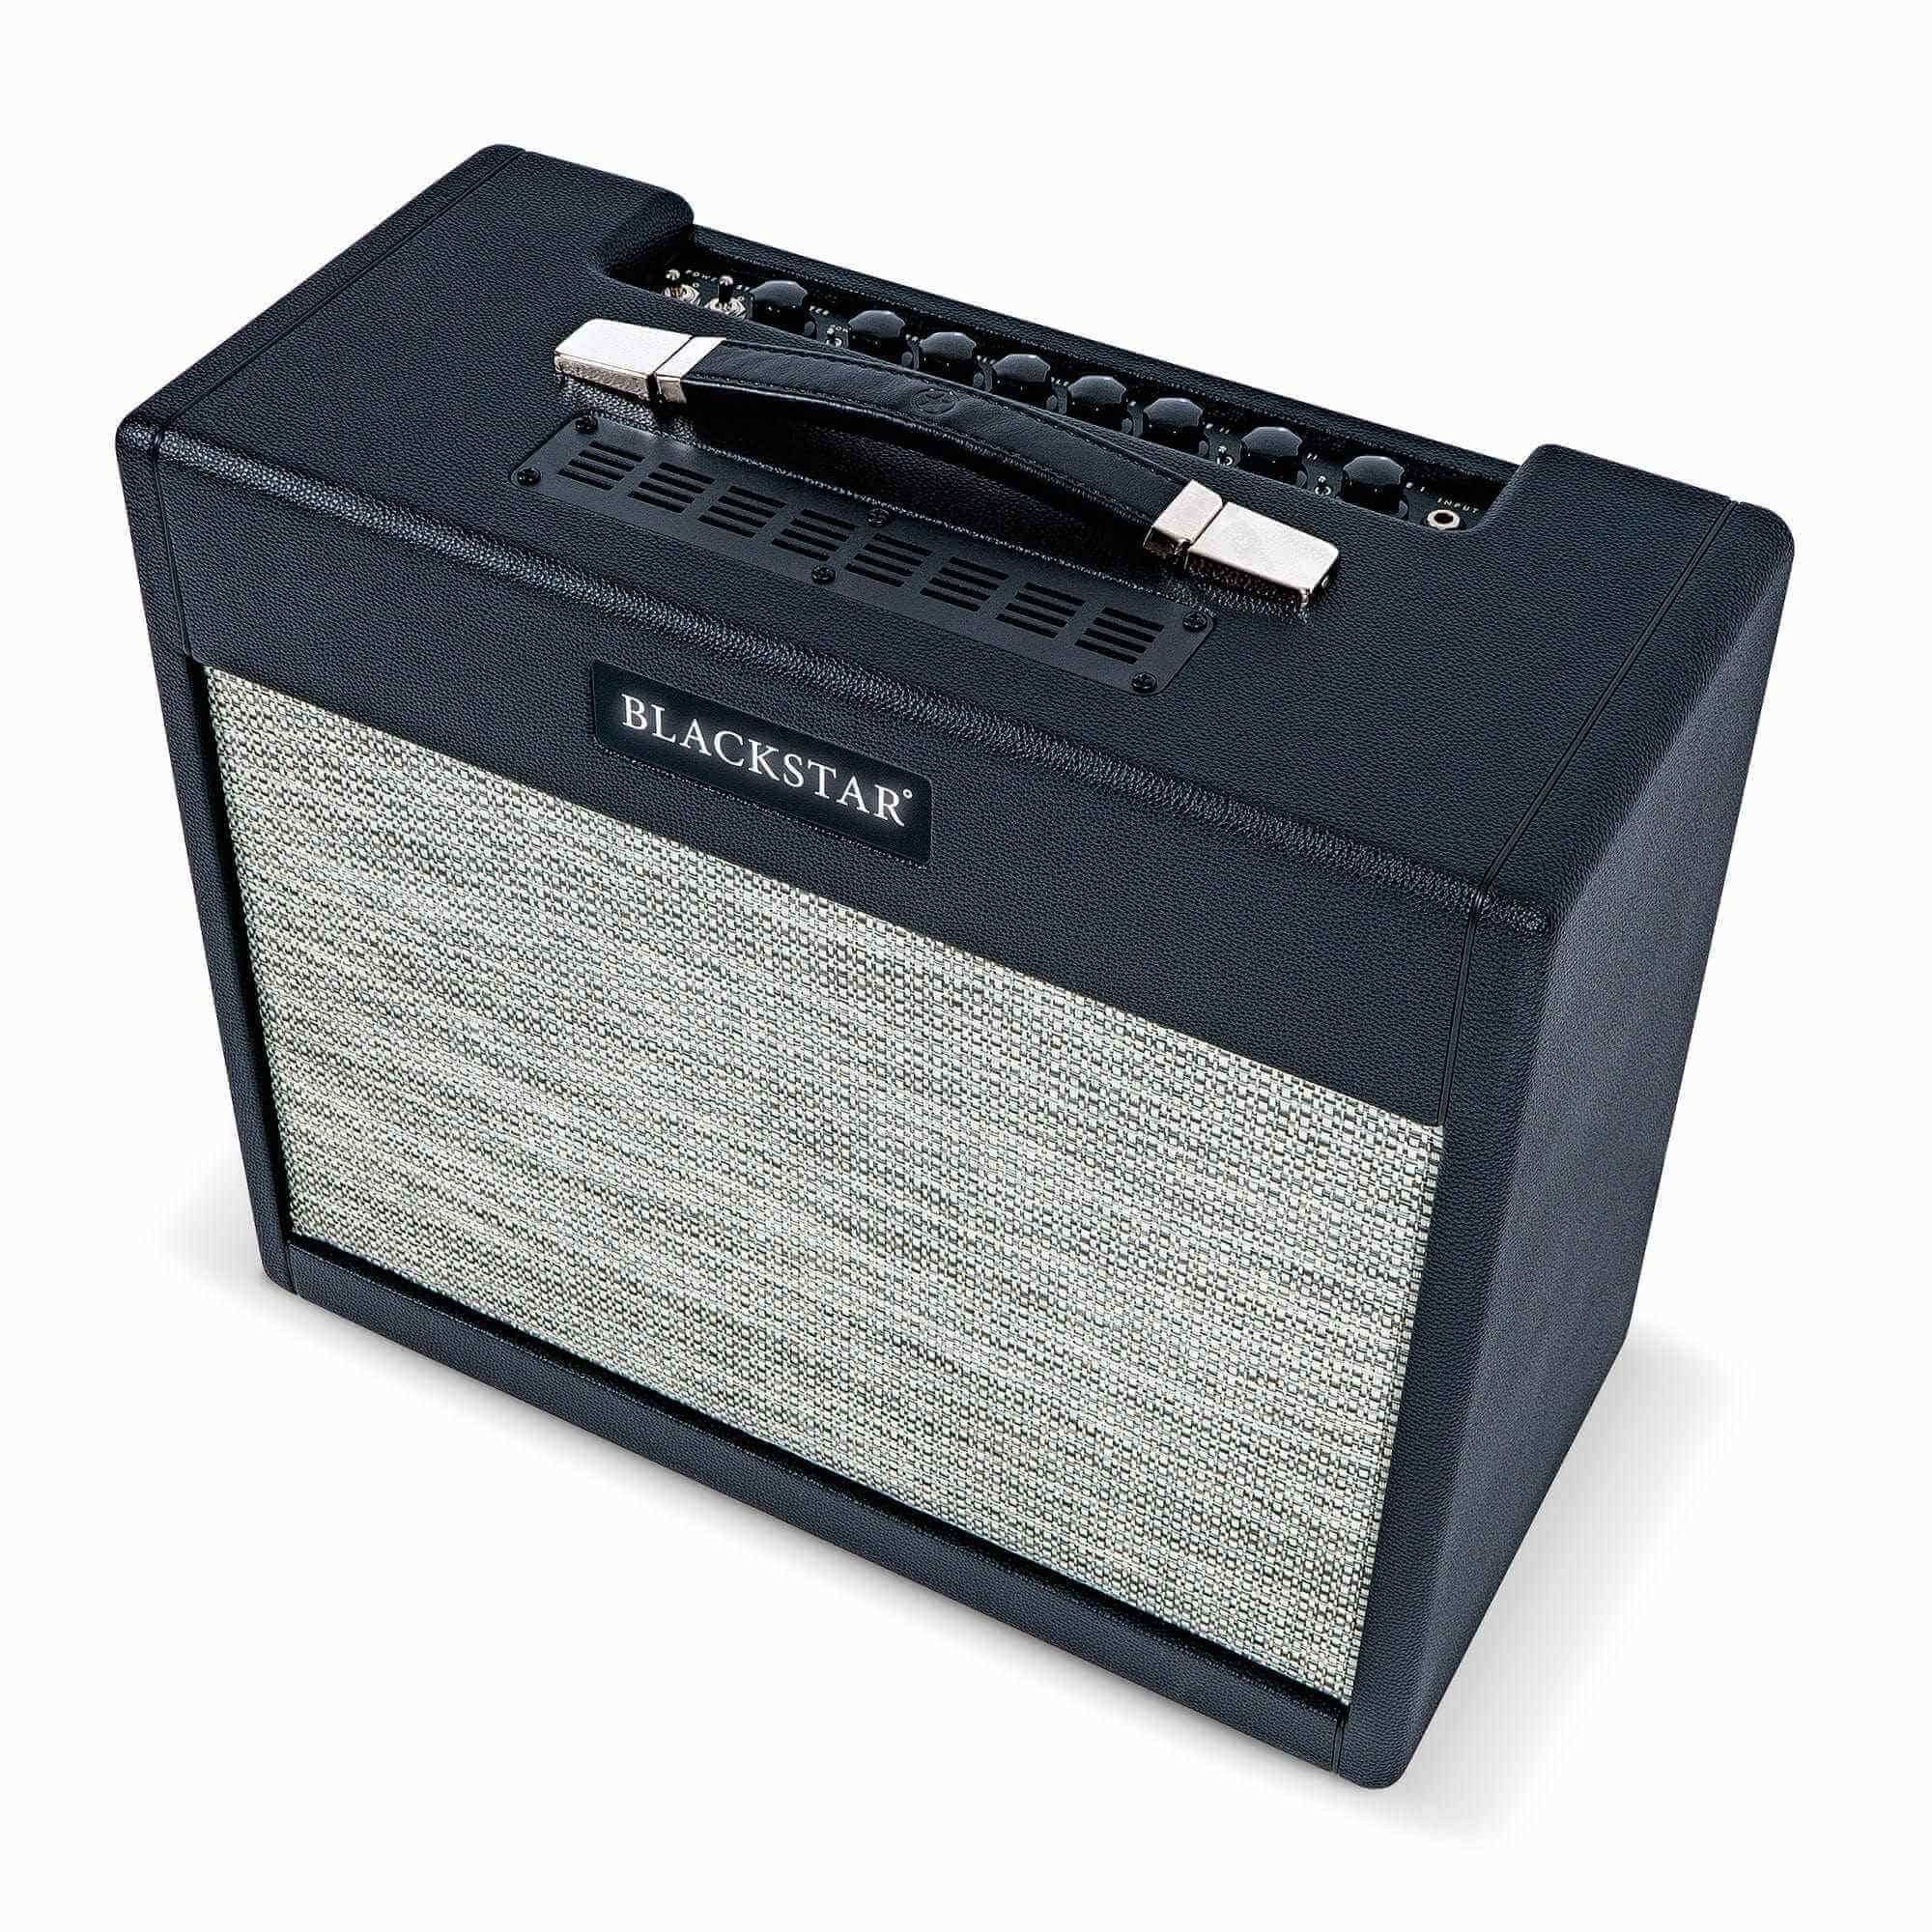 Blackstar Amplifier Blackstar - St James 6L6 50w combo